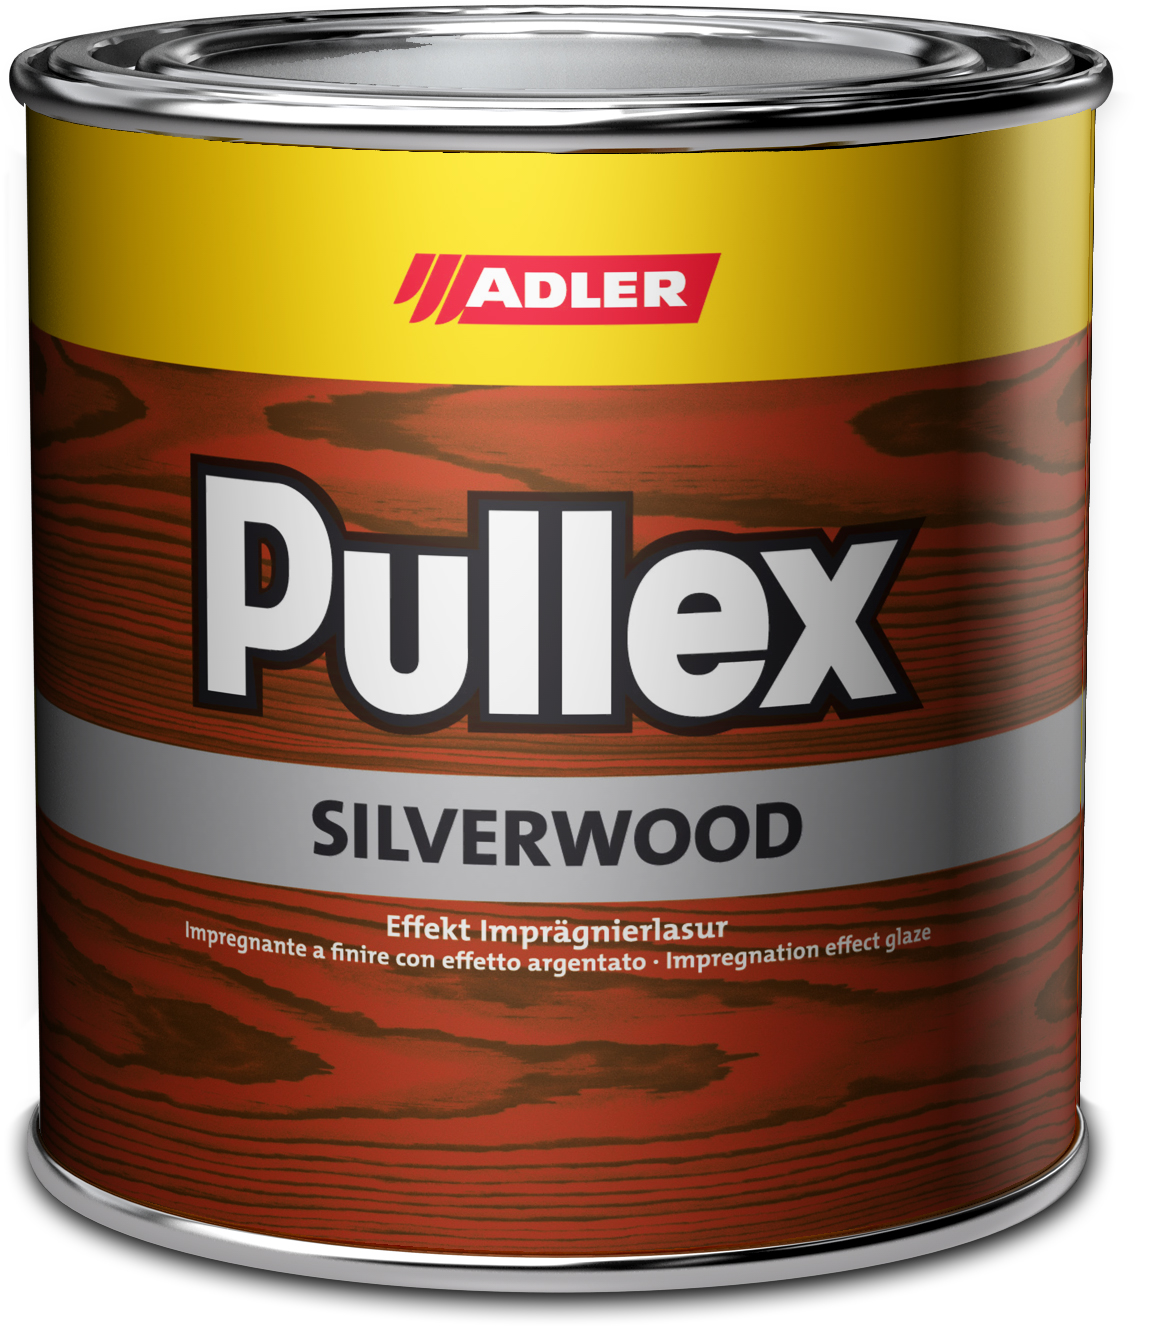 Adler Pullex Silverwood - efektná lazúra do exteriéru vytvárajúca vzhľad starého dreva 20 l graualuminium - hliníkovo sivá